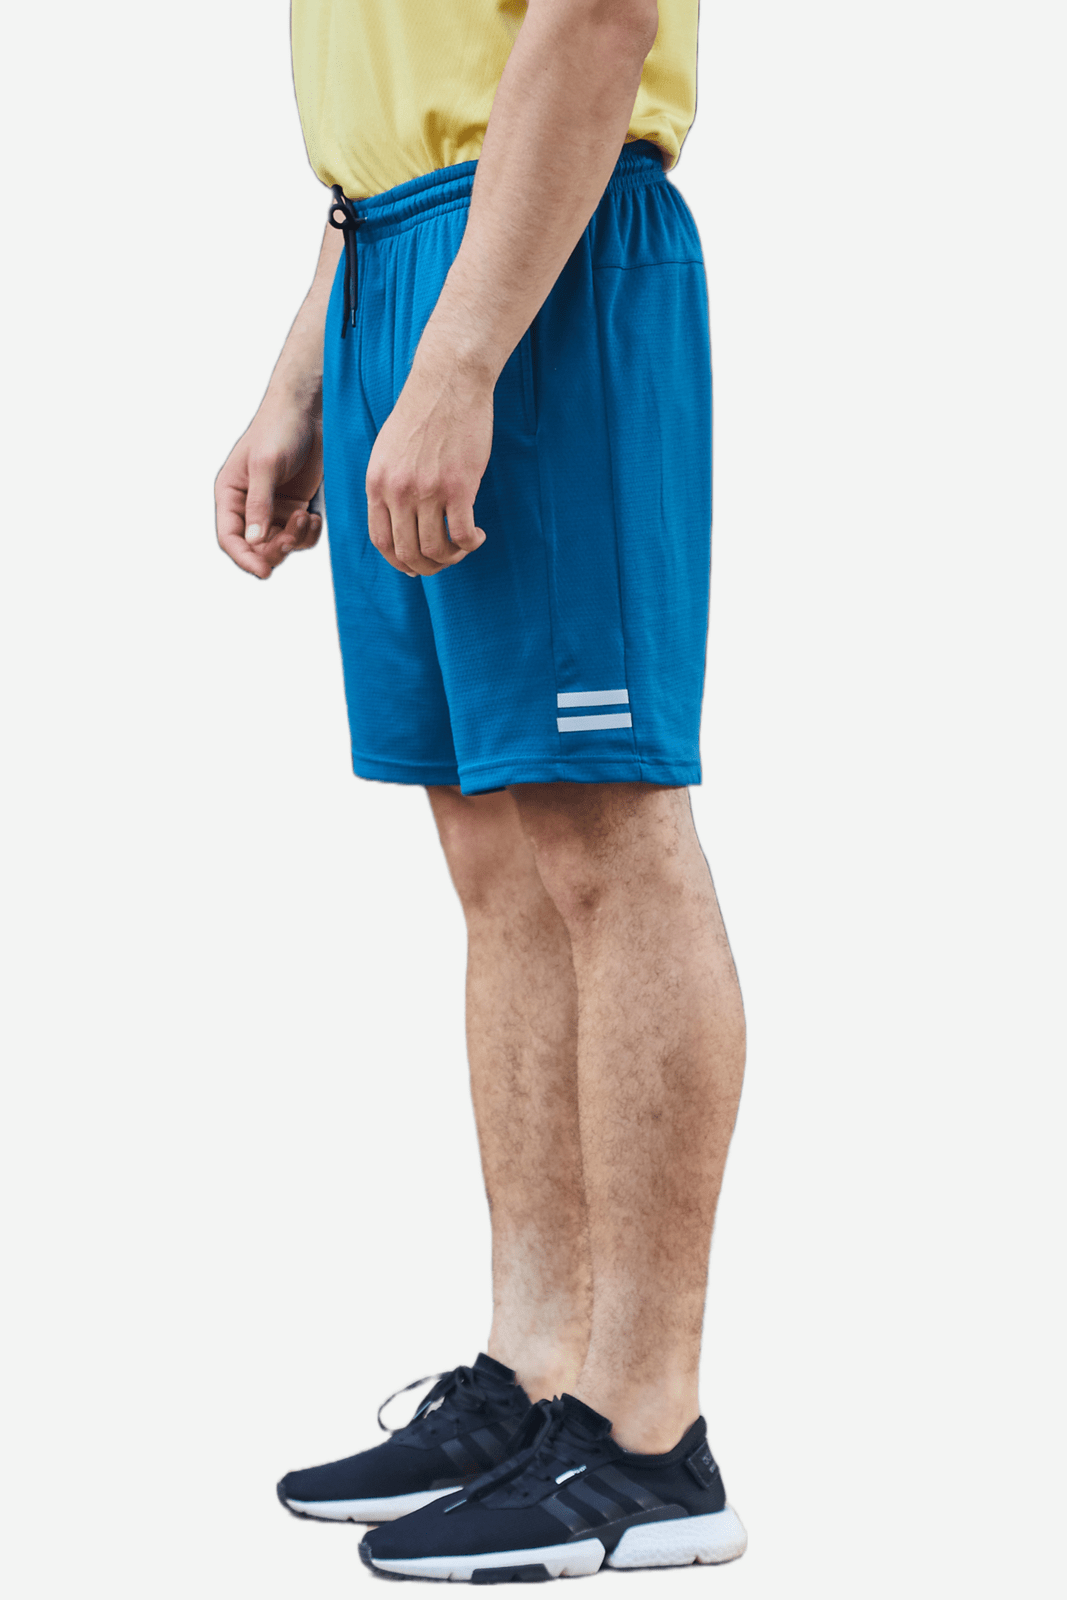 Pantaloneta deportiva azul fondo entero, bolsillos laterales y bolsillo en posterior con cierre para hombre